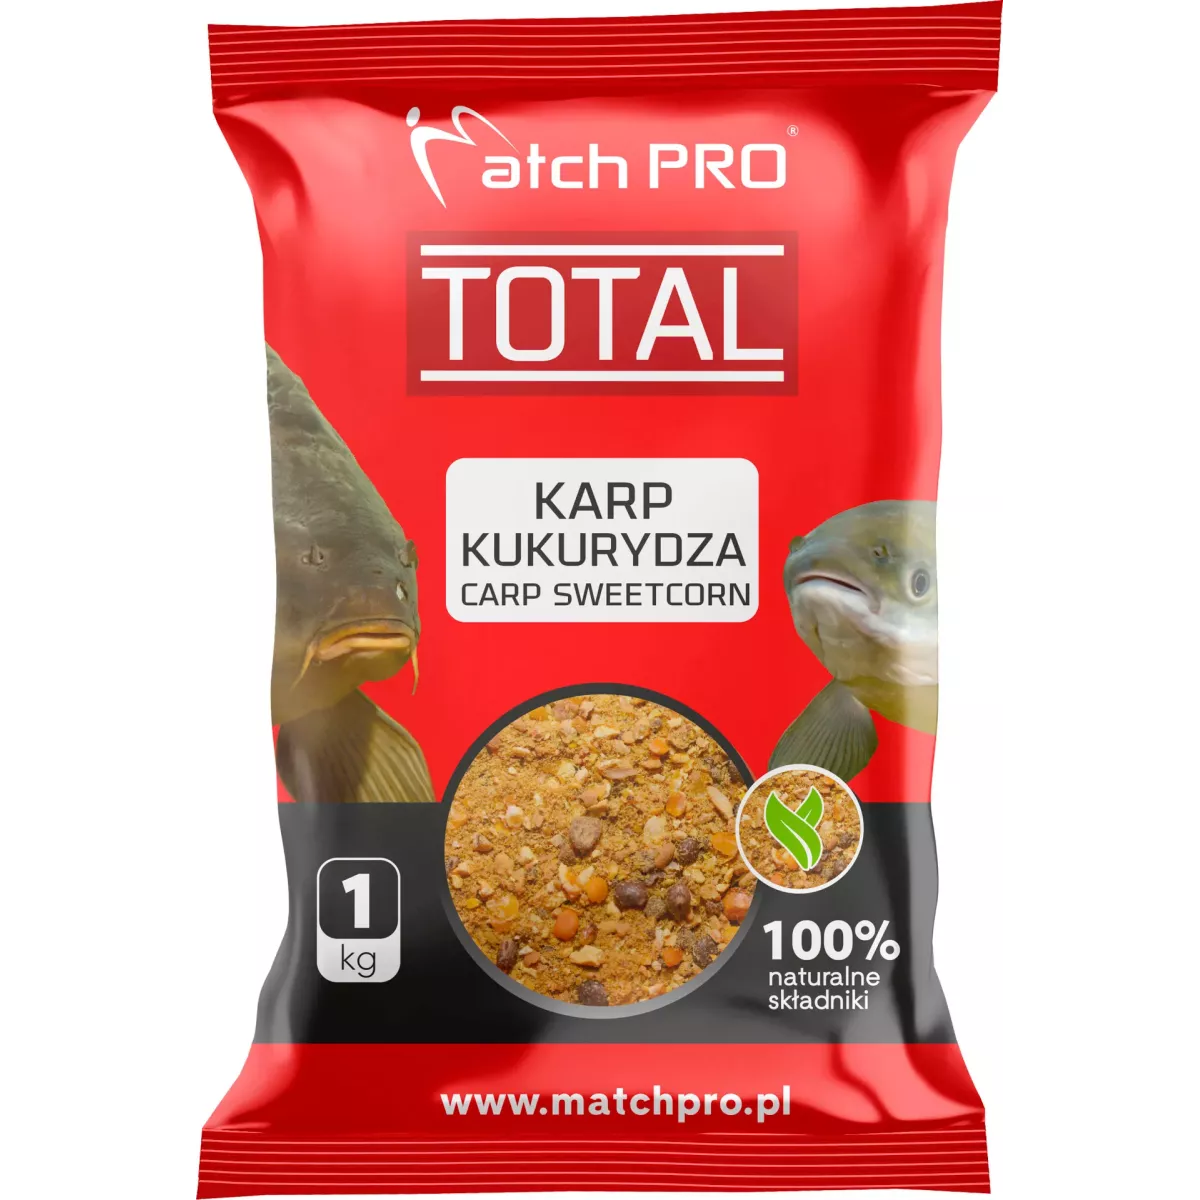 Zanęta MatchPro Total 1kg - KARP KUKURYDZA